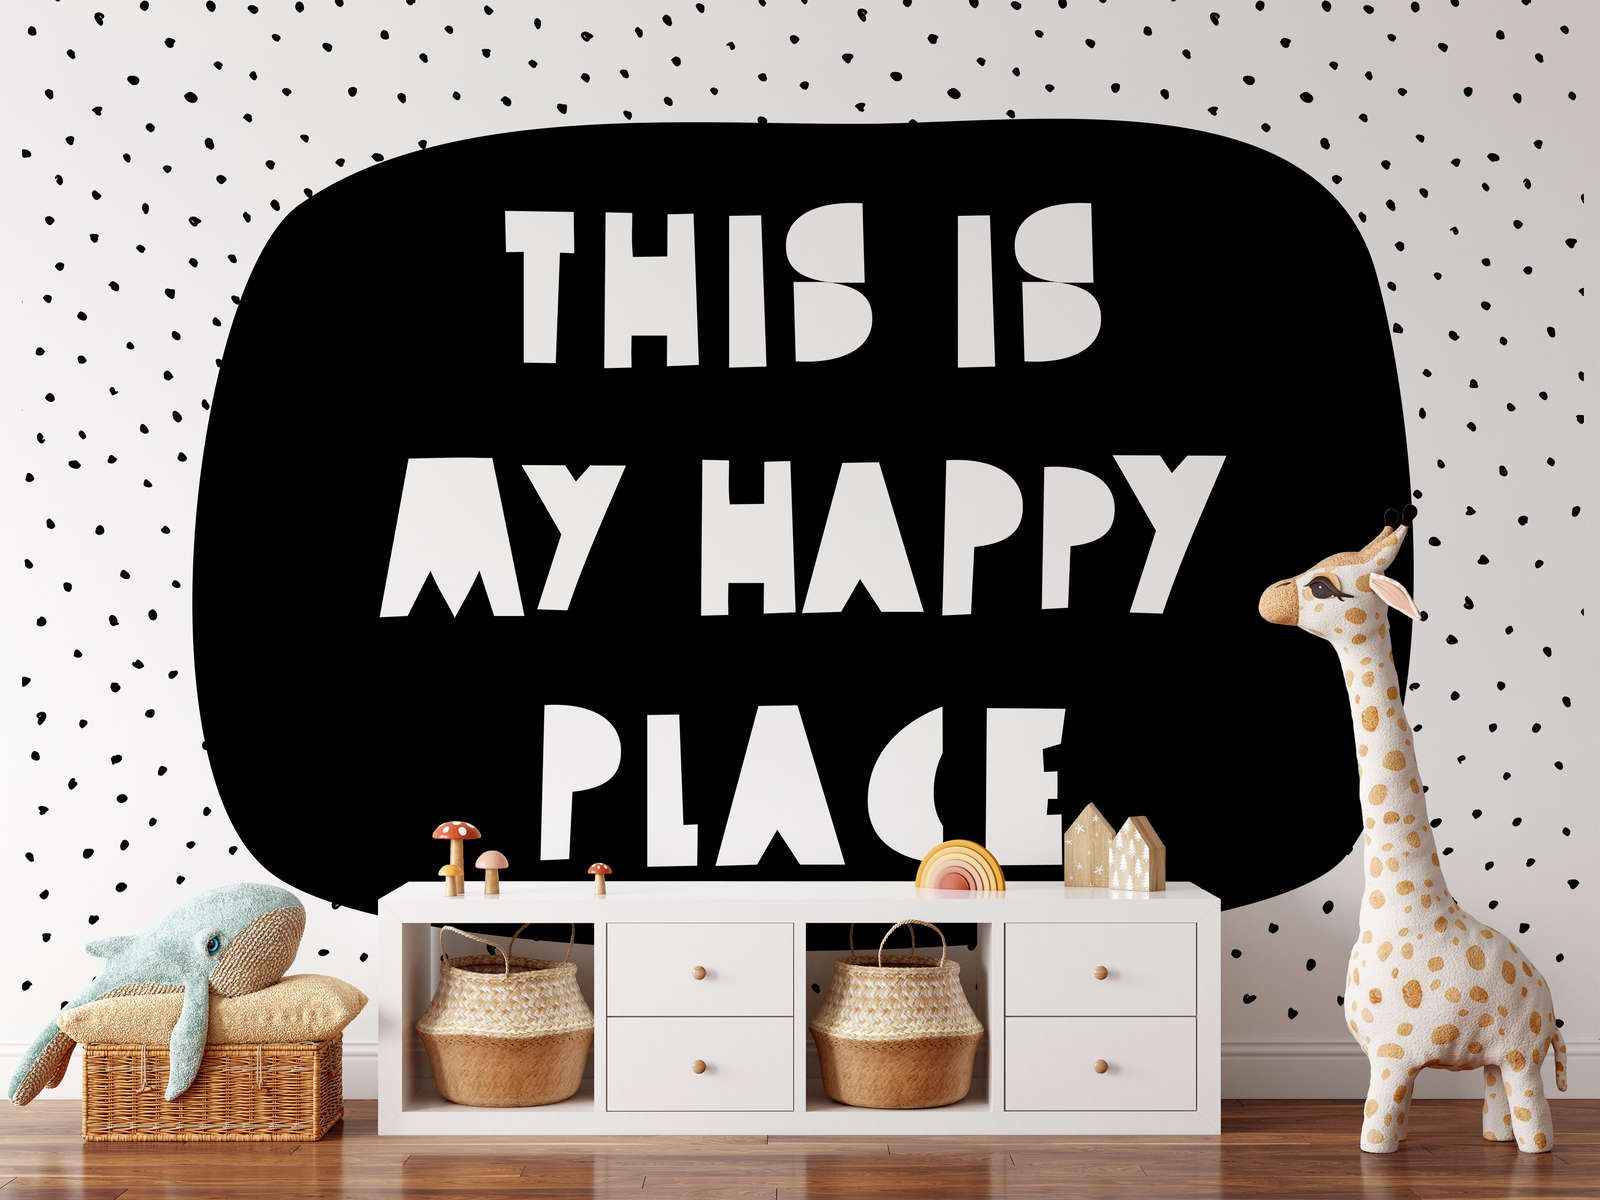             Fotomurali per la camera dei bambini con la scritta "This is my happy place" - Materiali non tessuto liscio e leggermente lucido
        